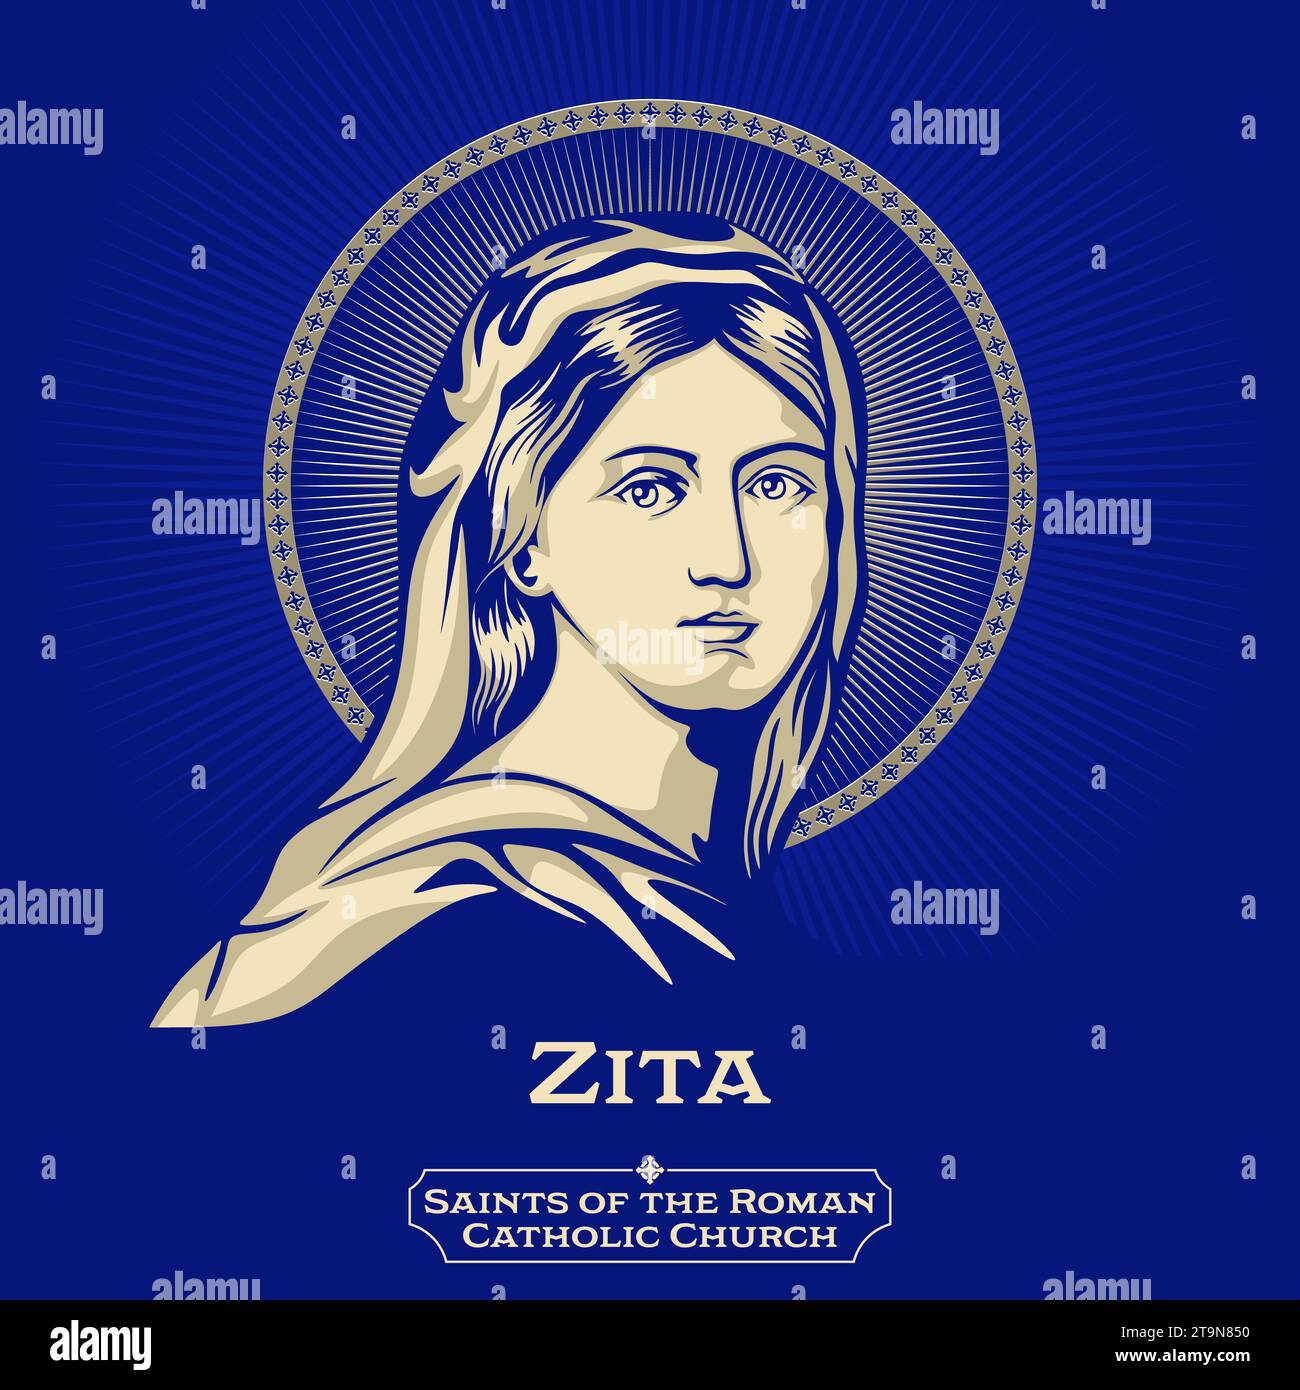 Katholische Heilige. Zita (1212–1272), auch bekannt als Sitha oder Citha, war eine italienische heilige, Schutzpatronin der Dienstmädchen und Hausangestellten. Stock Vektor